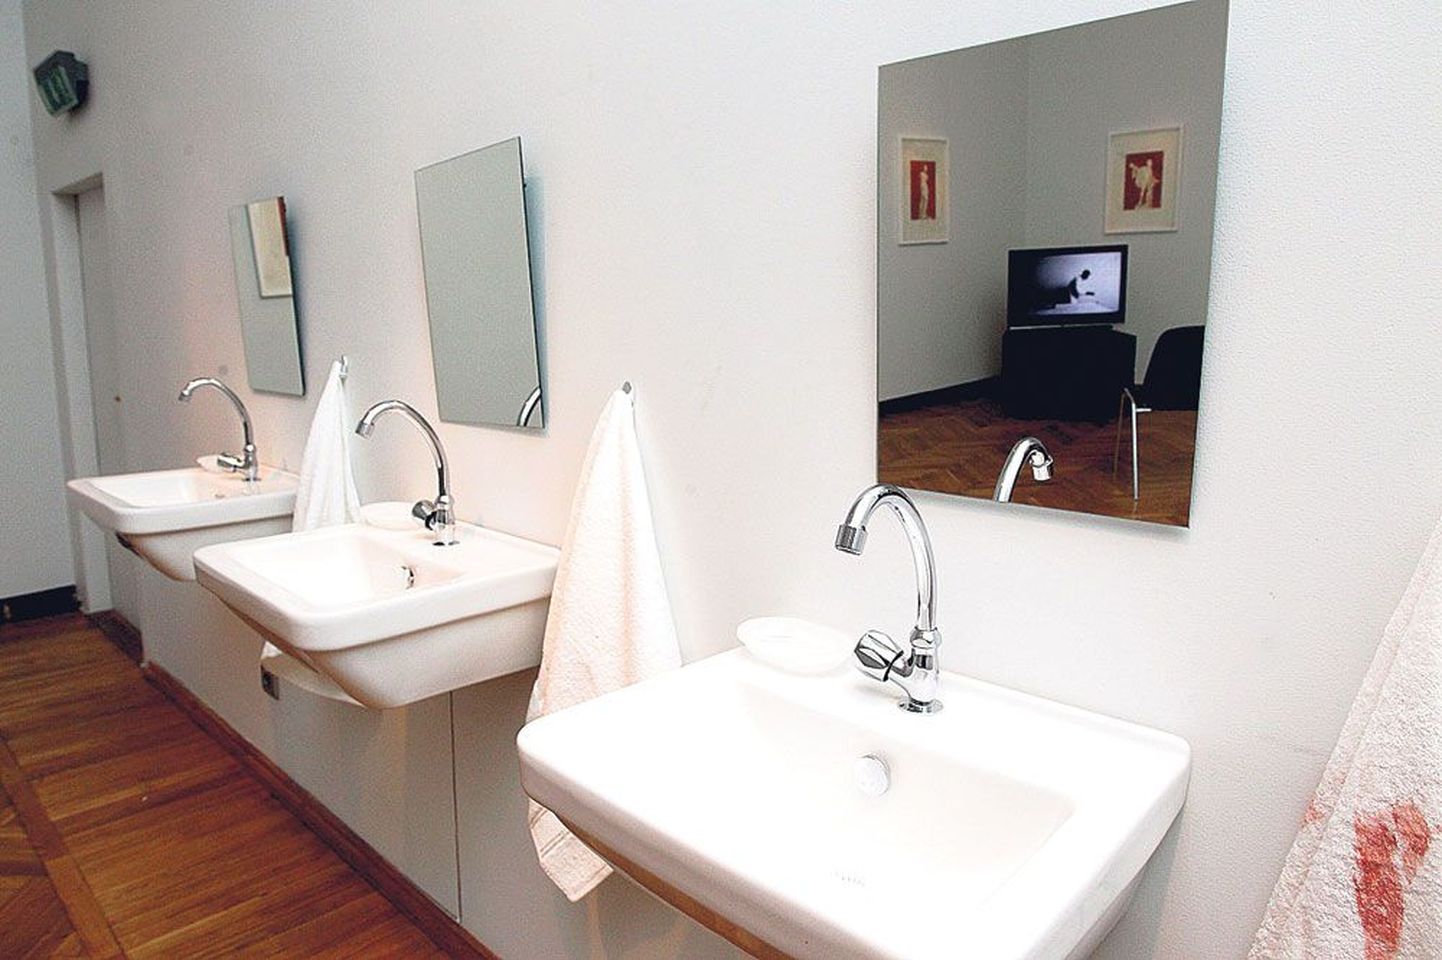 Raeplatsi viltuse maja kunstikabinetis on kraanikausi kohal peegel, millest paistavad samasse näituseruumi paigaldatud videoseadmed ja seinale kinnitatud joonistused.